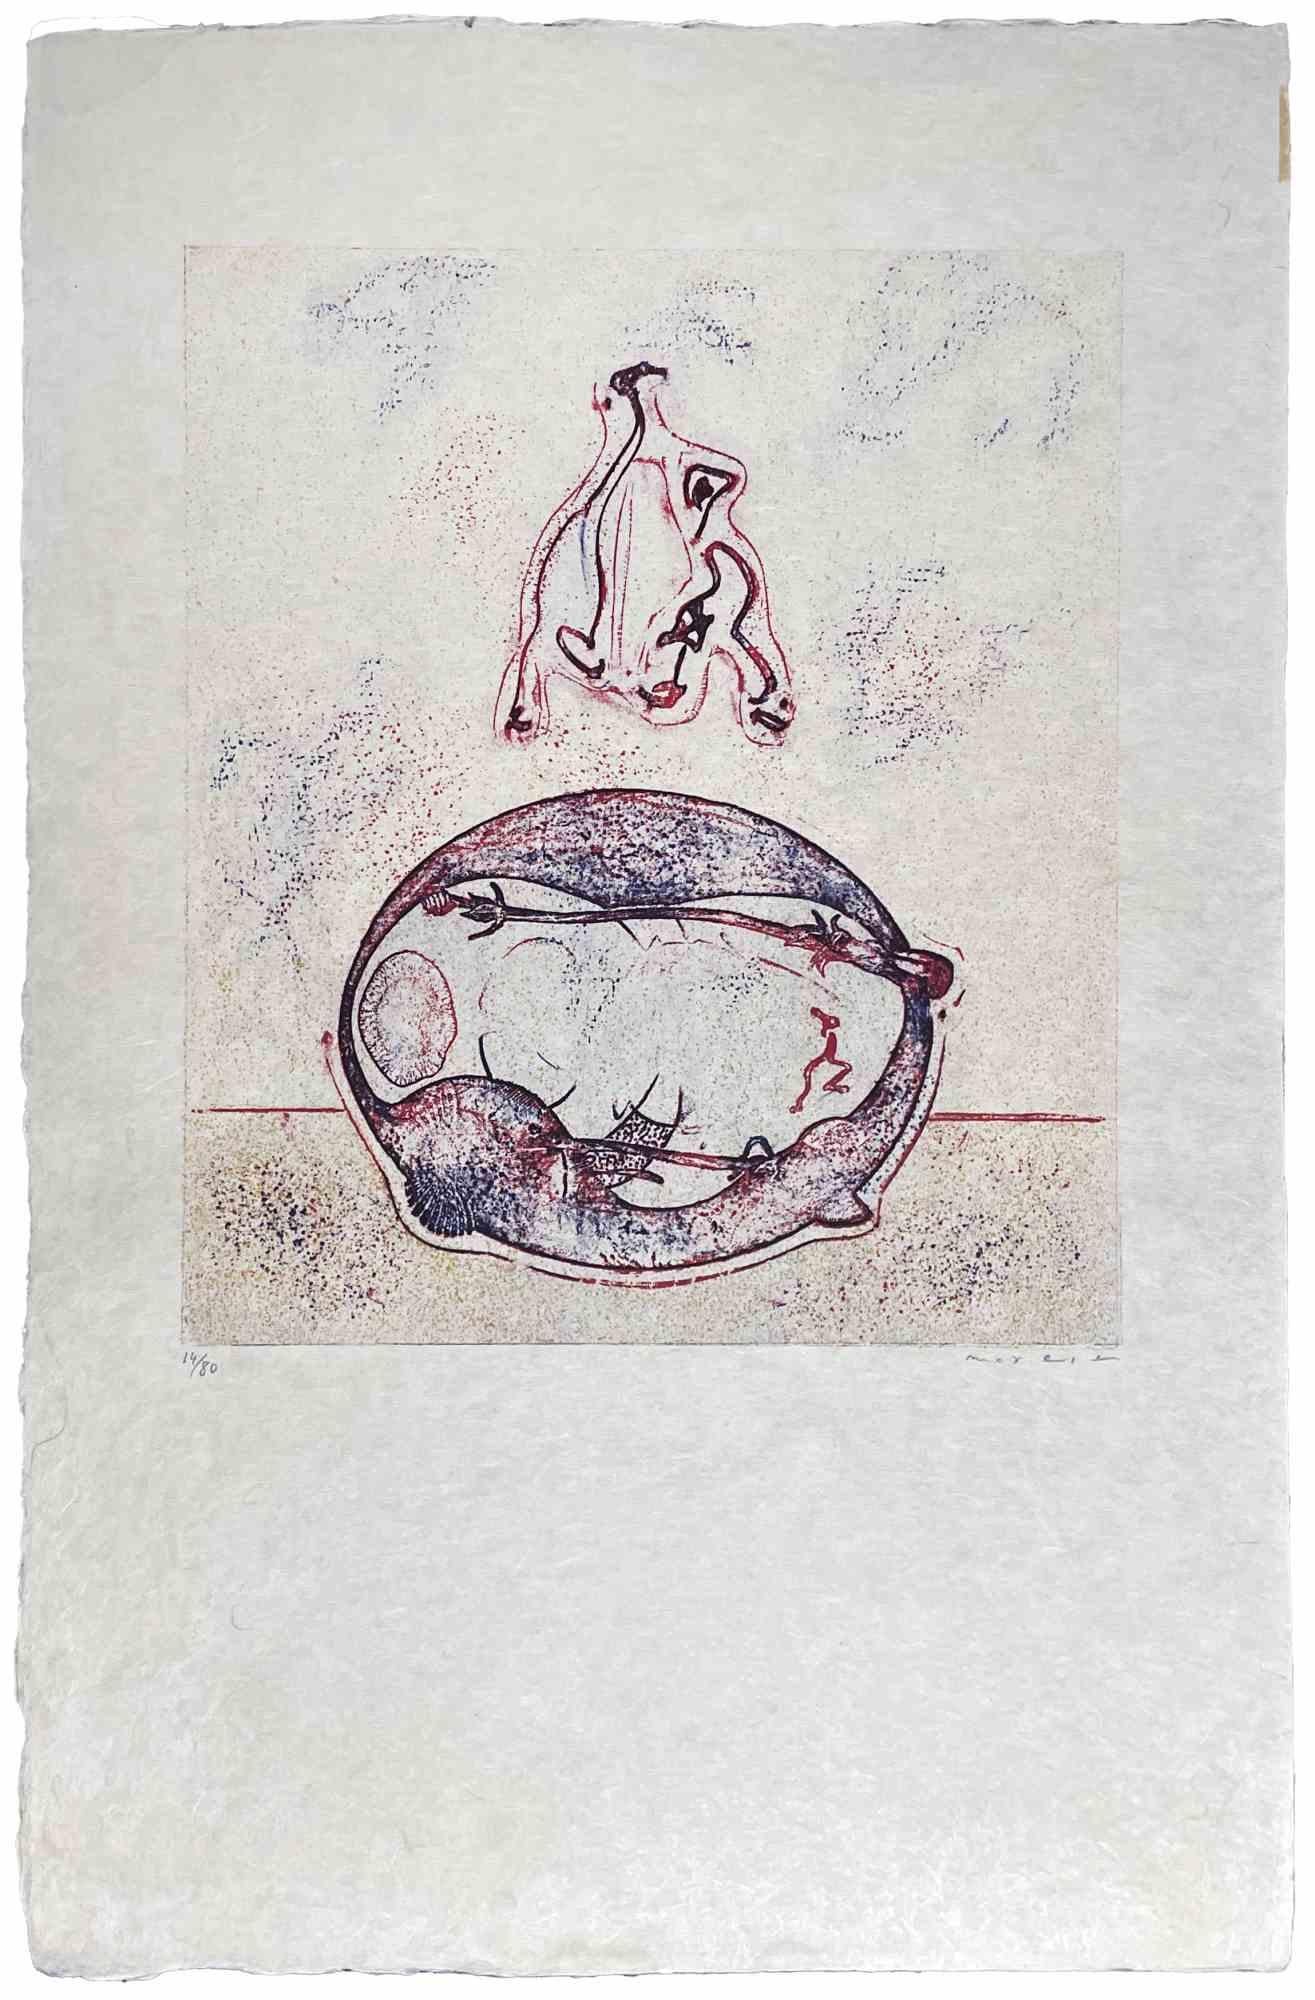 Après moi ist ein Kunstwerk, das von Max Ernst als Deluxe-Edition für das Kunstmagazin XXème Siècle neu aufgelegt wurde. Lithographie auf japanischem Papier, 1971. 
Ausgabe 14/80. Handsigniert und nummeriert. 29 x 25 cm Prov. Coll Jorg Kees.
Sehr